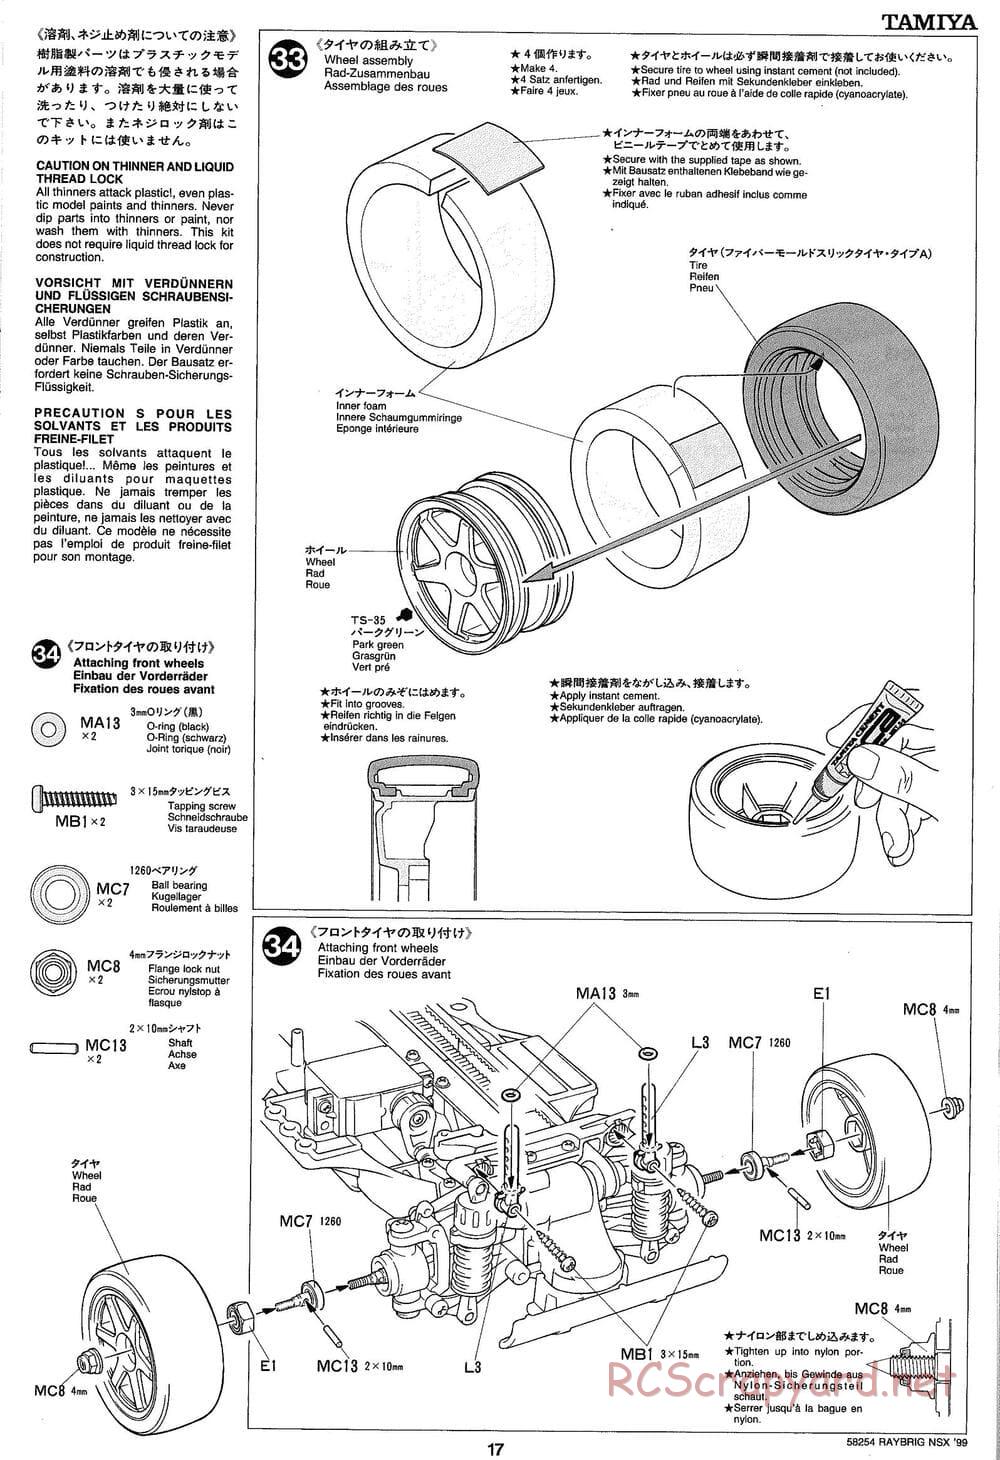 Tamiya - Raybrig NSX 99 - TA-03R Chassis - Manual - Page 17